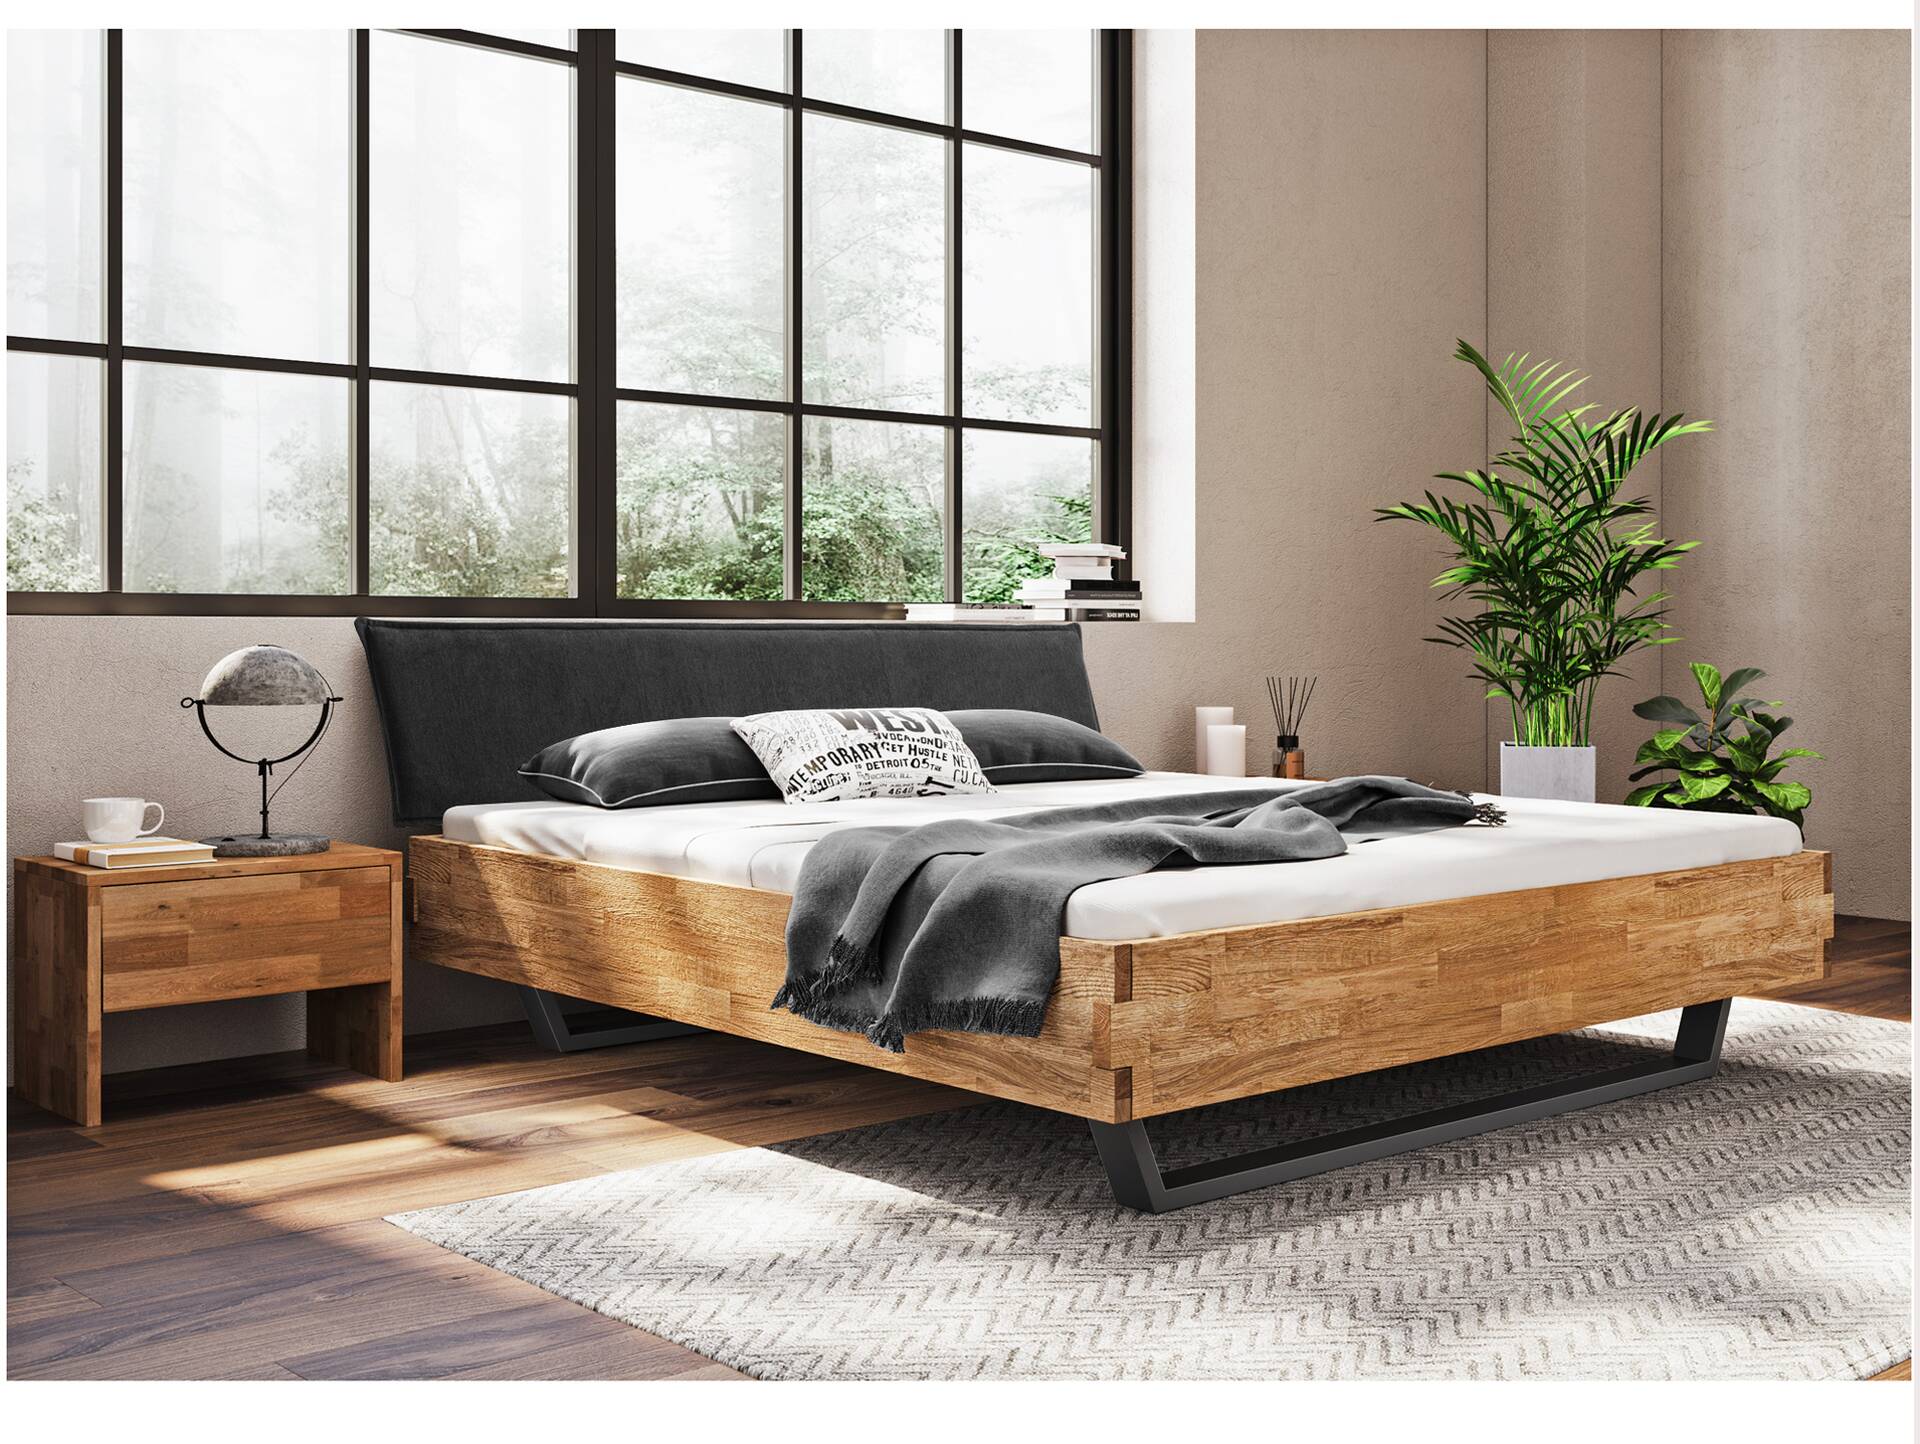 CORDINO Kufenbett aus Eiche mit Polsterkopfteil, Material Massivholz 140 x 200 cm | Eiche lackiert | Stoff Anthrazit | gehackt